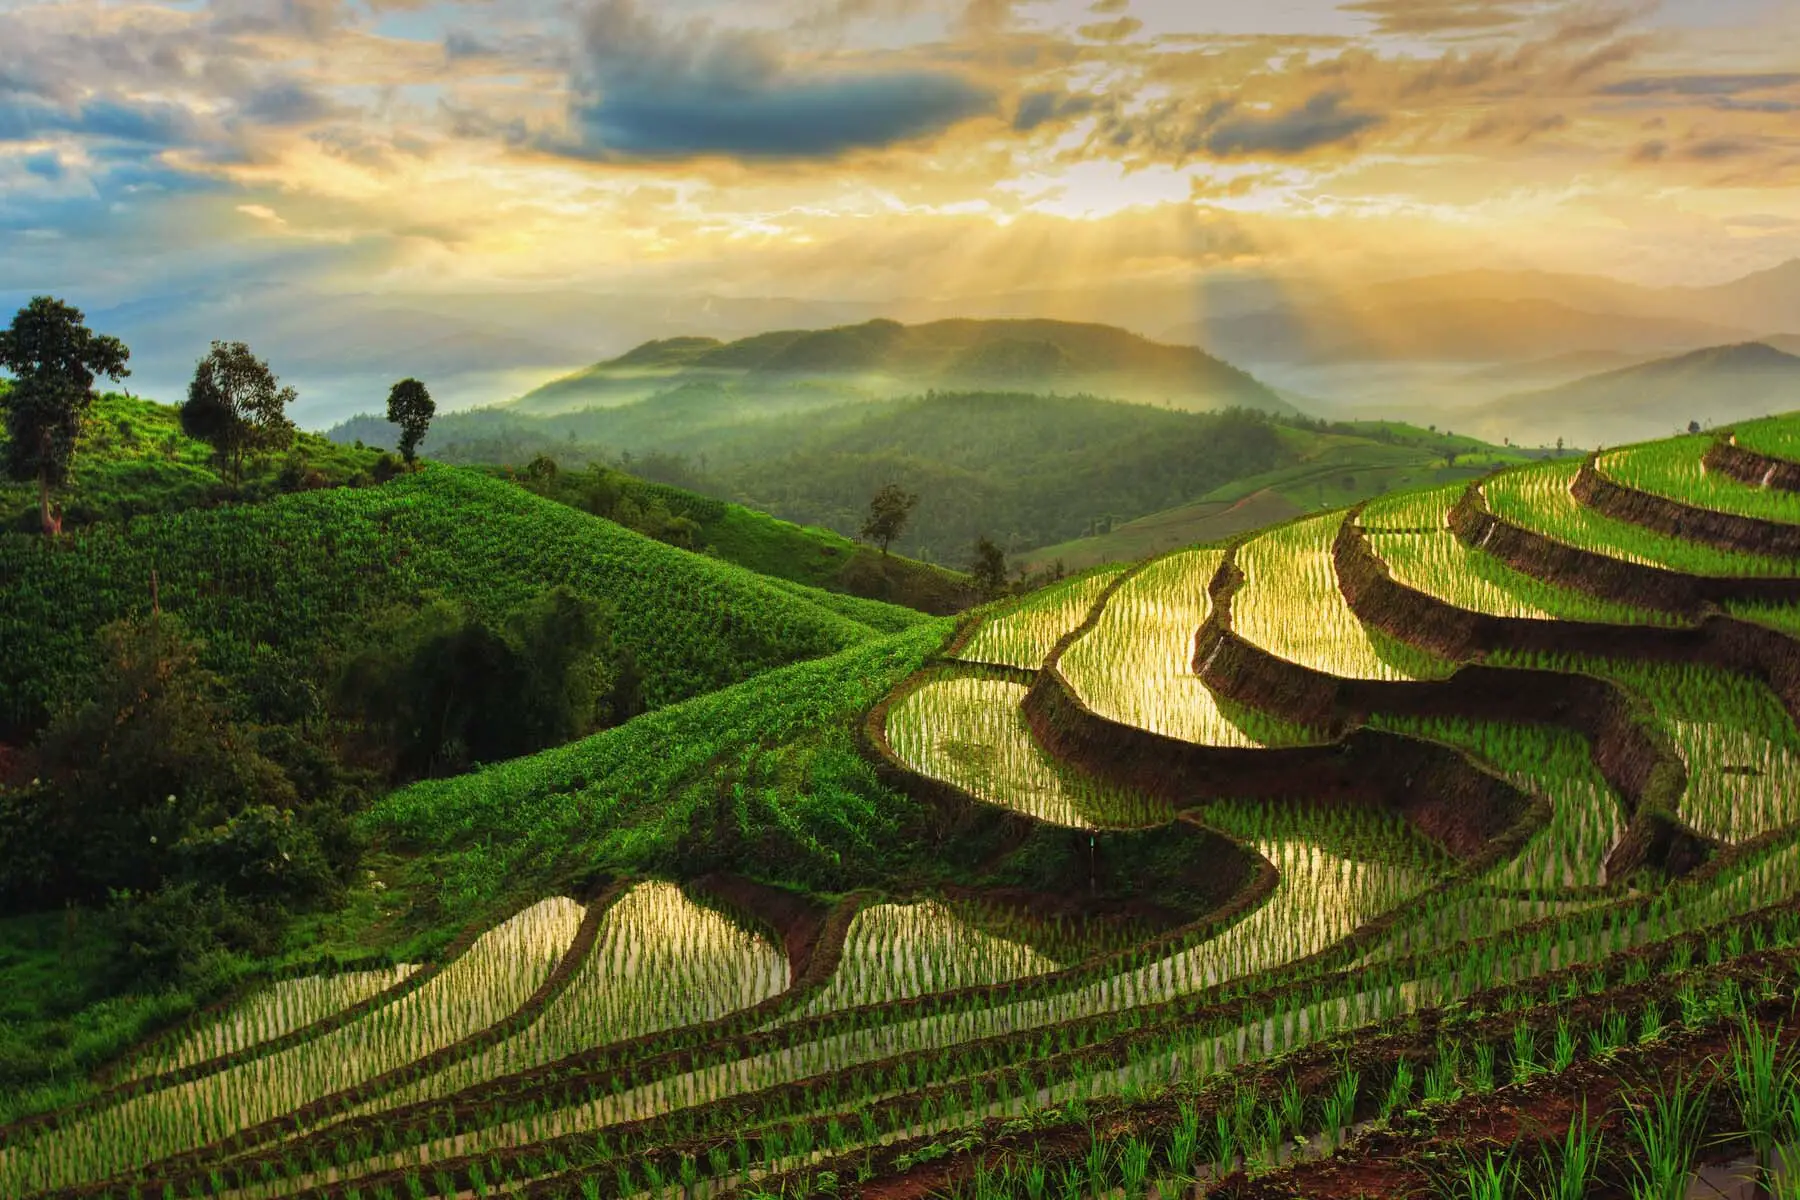 Northern Thailand rice paddies